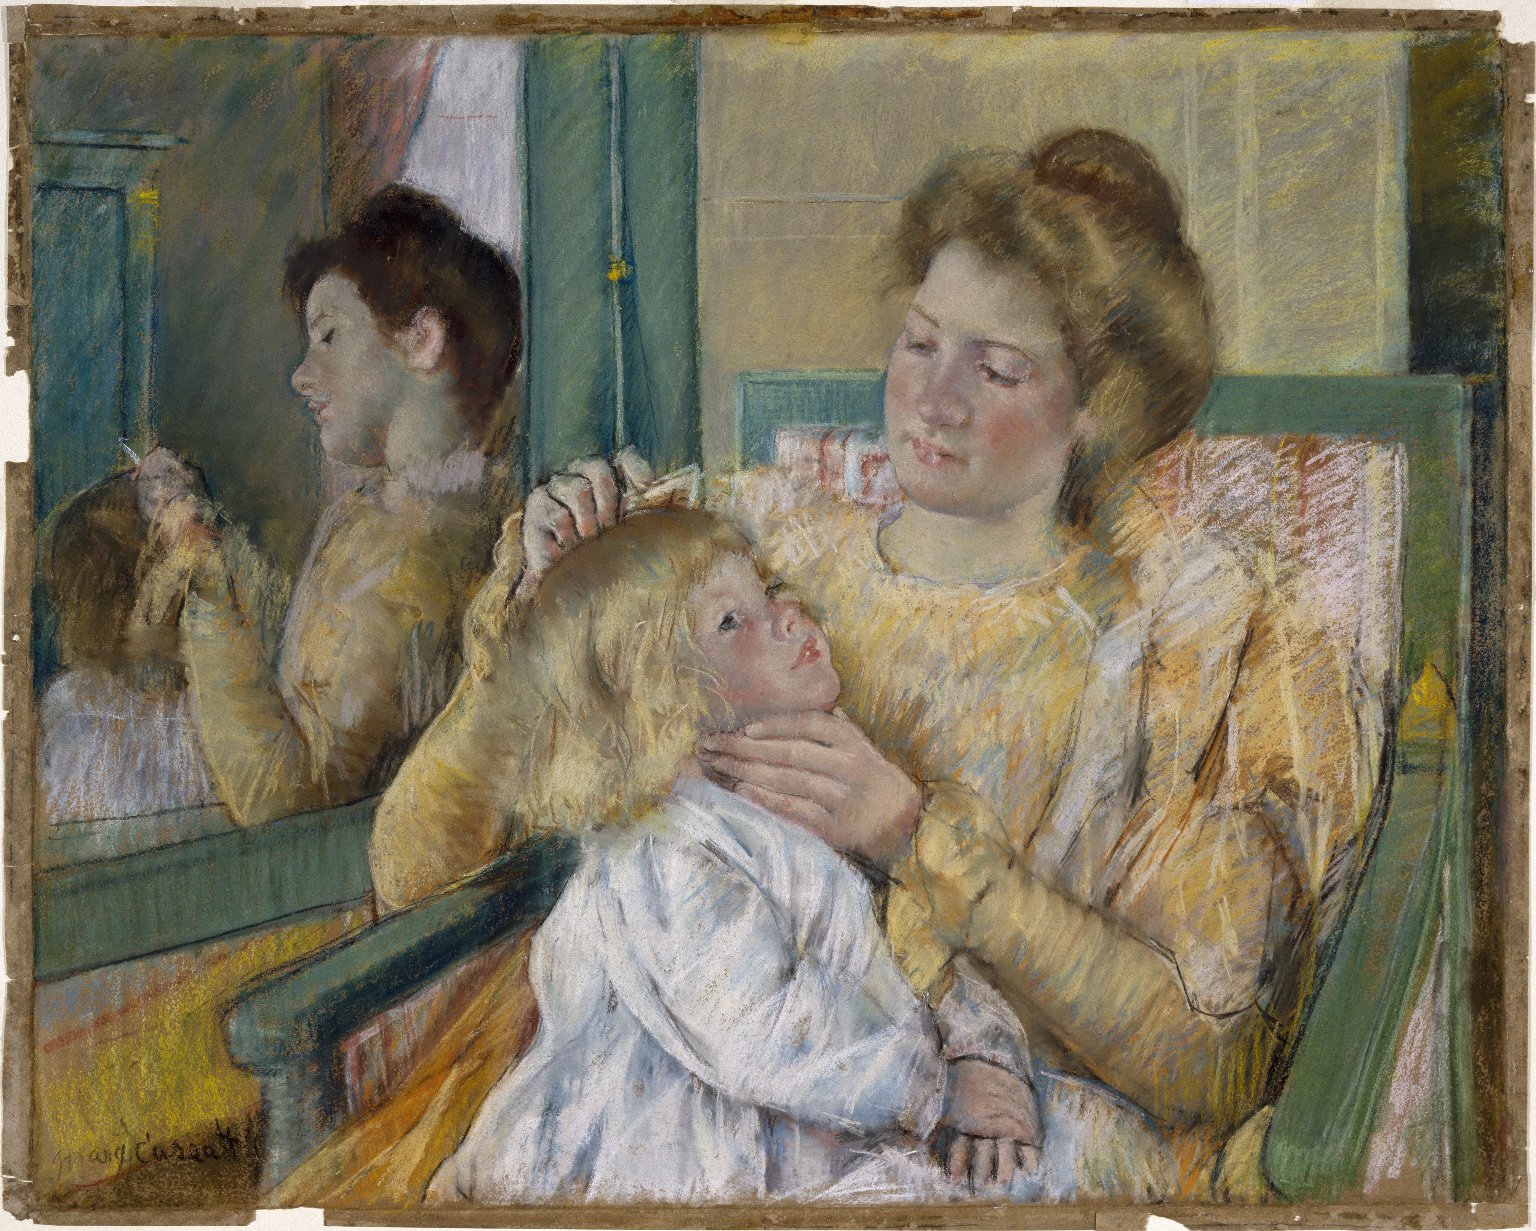 Matka czesząca włosy dziecka by Mary Cassatt - 1901 - 64,1 x 80,3 cm 